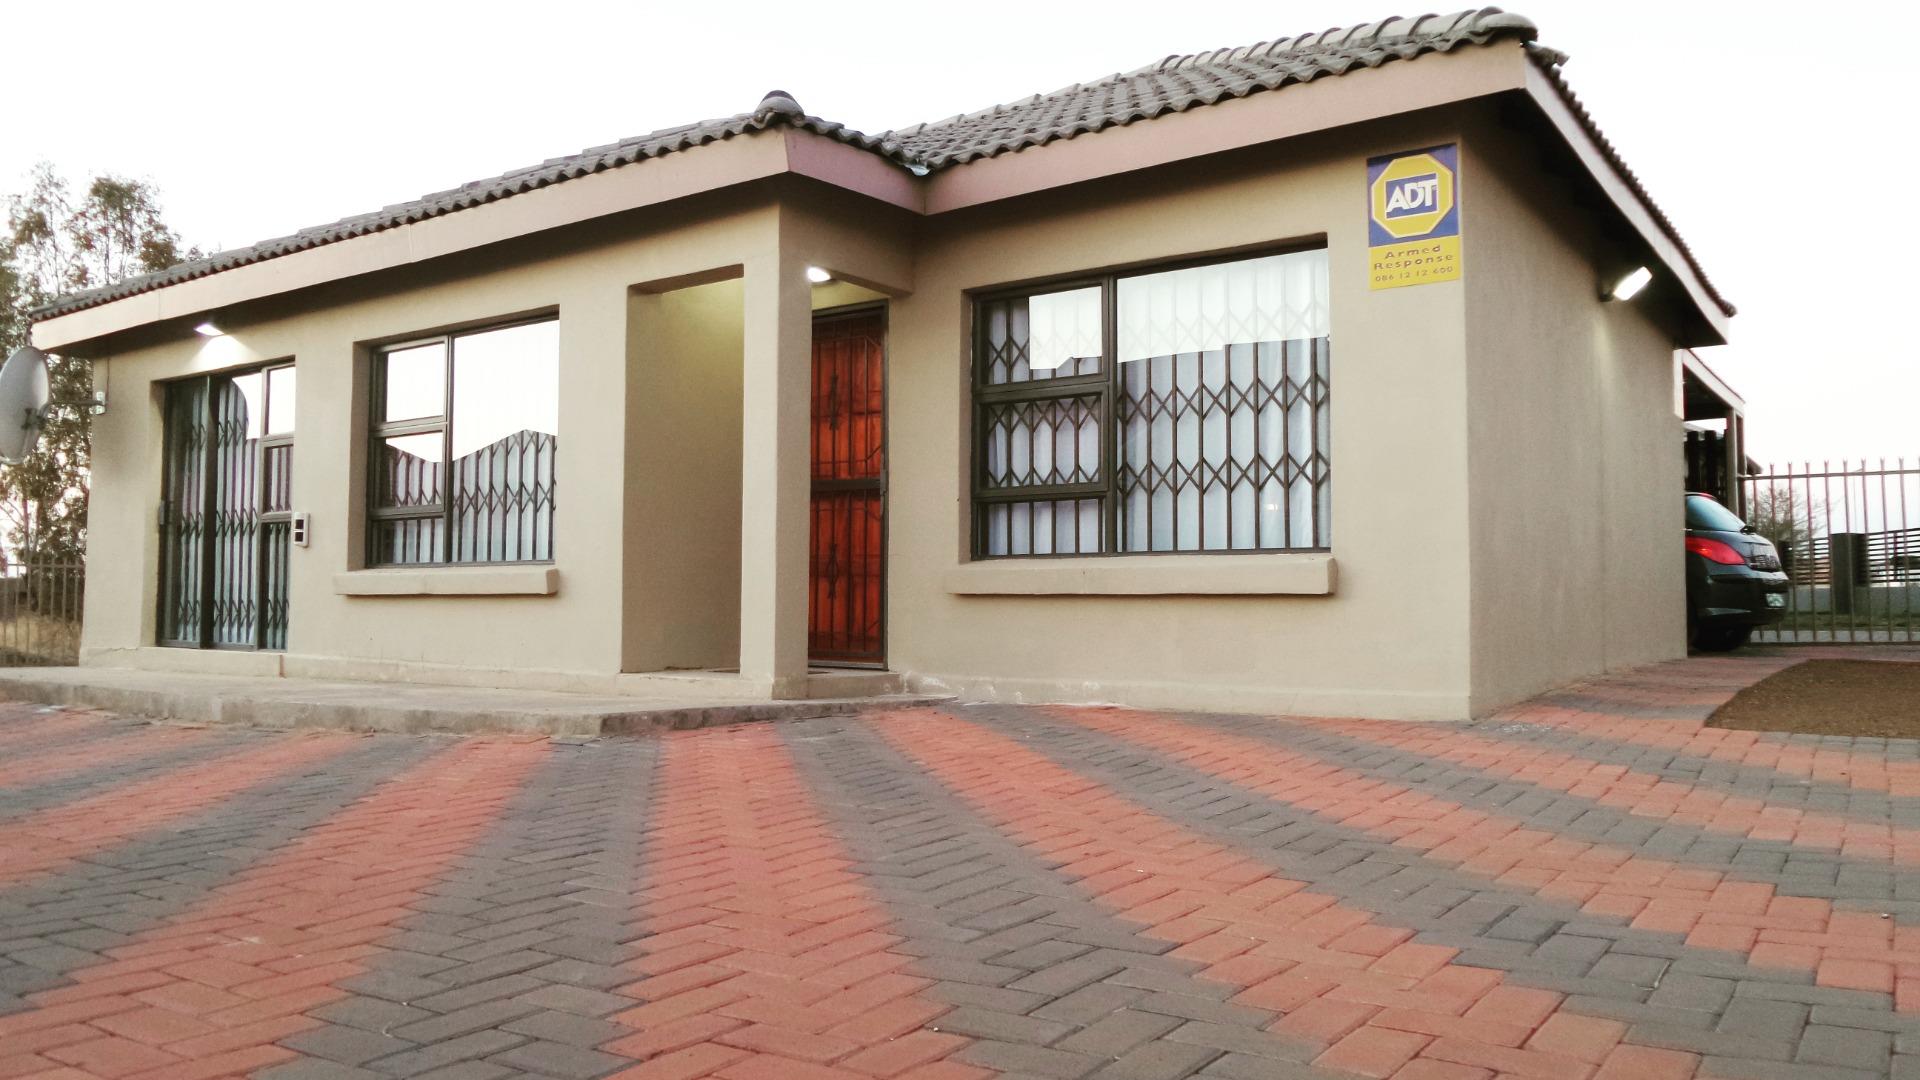 3 Bedroom House to rent in Vista Park - 27707 Vista Park, Bloemfontein